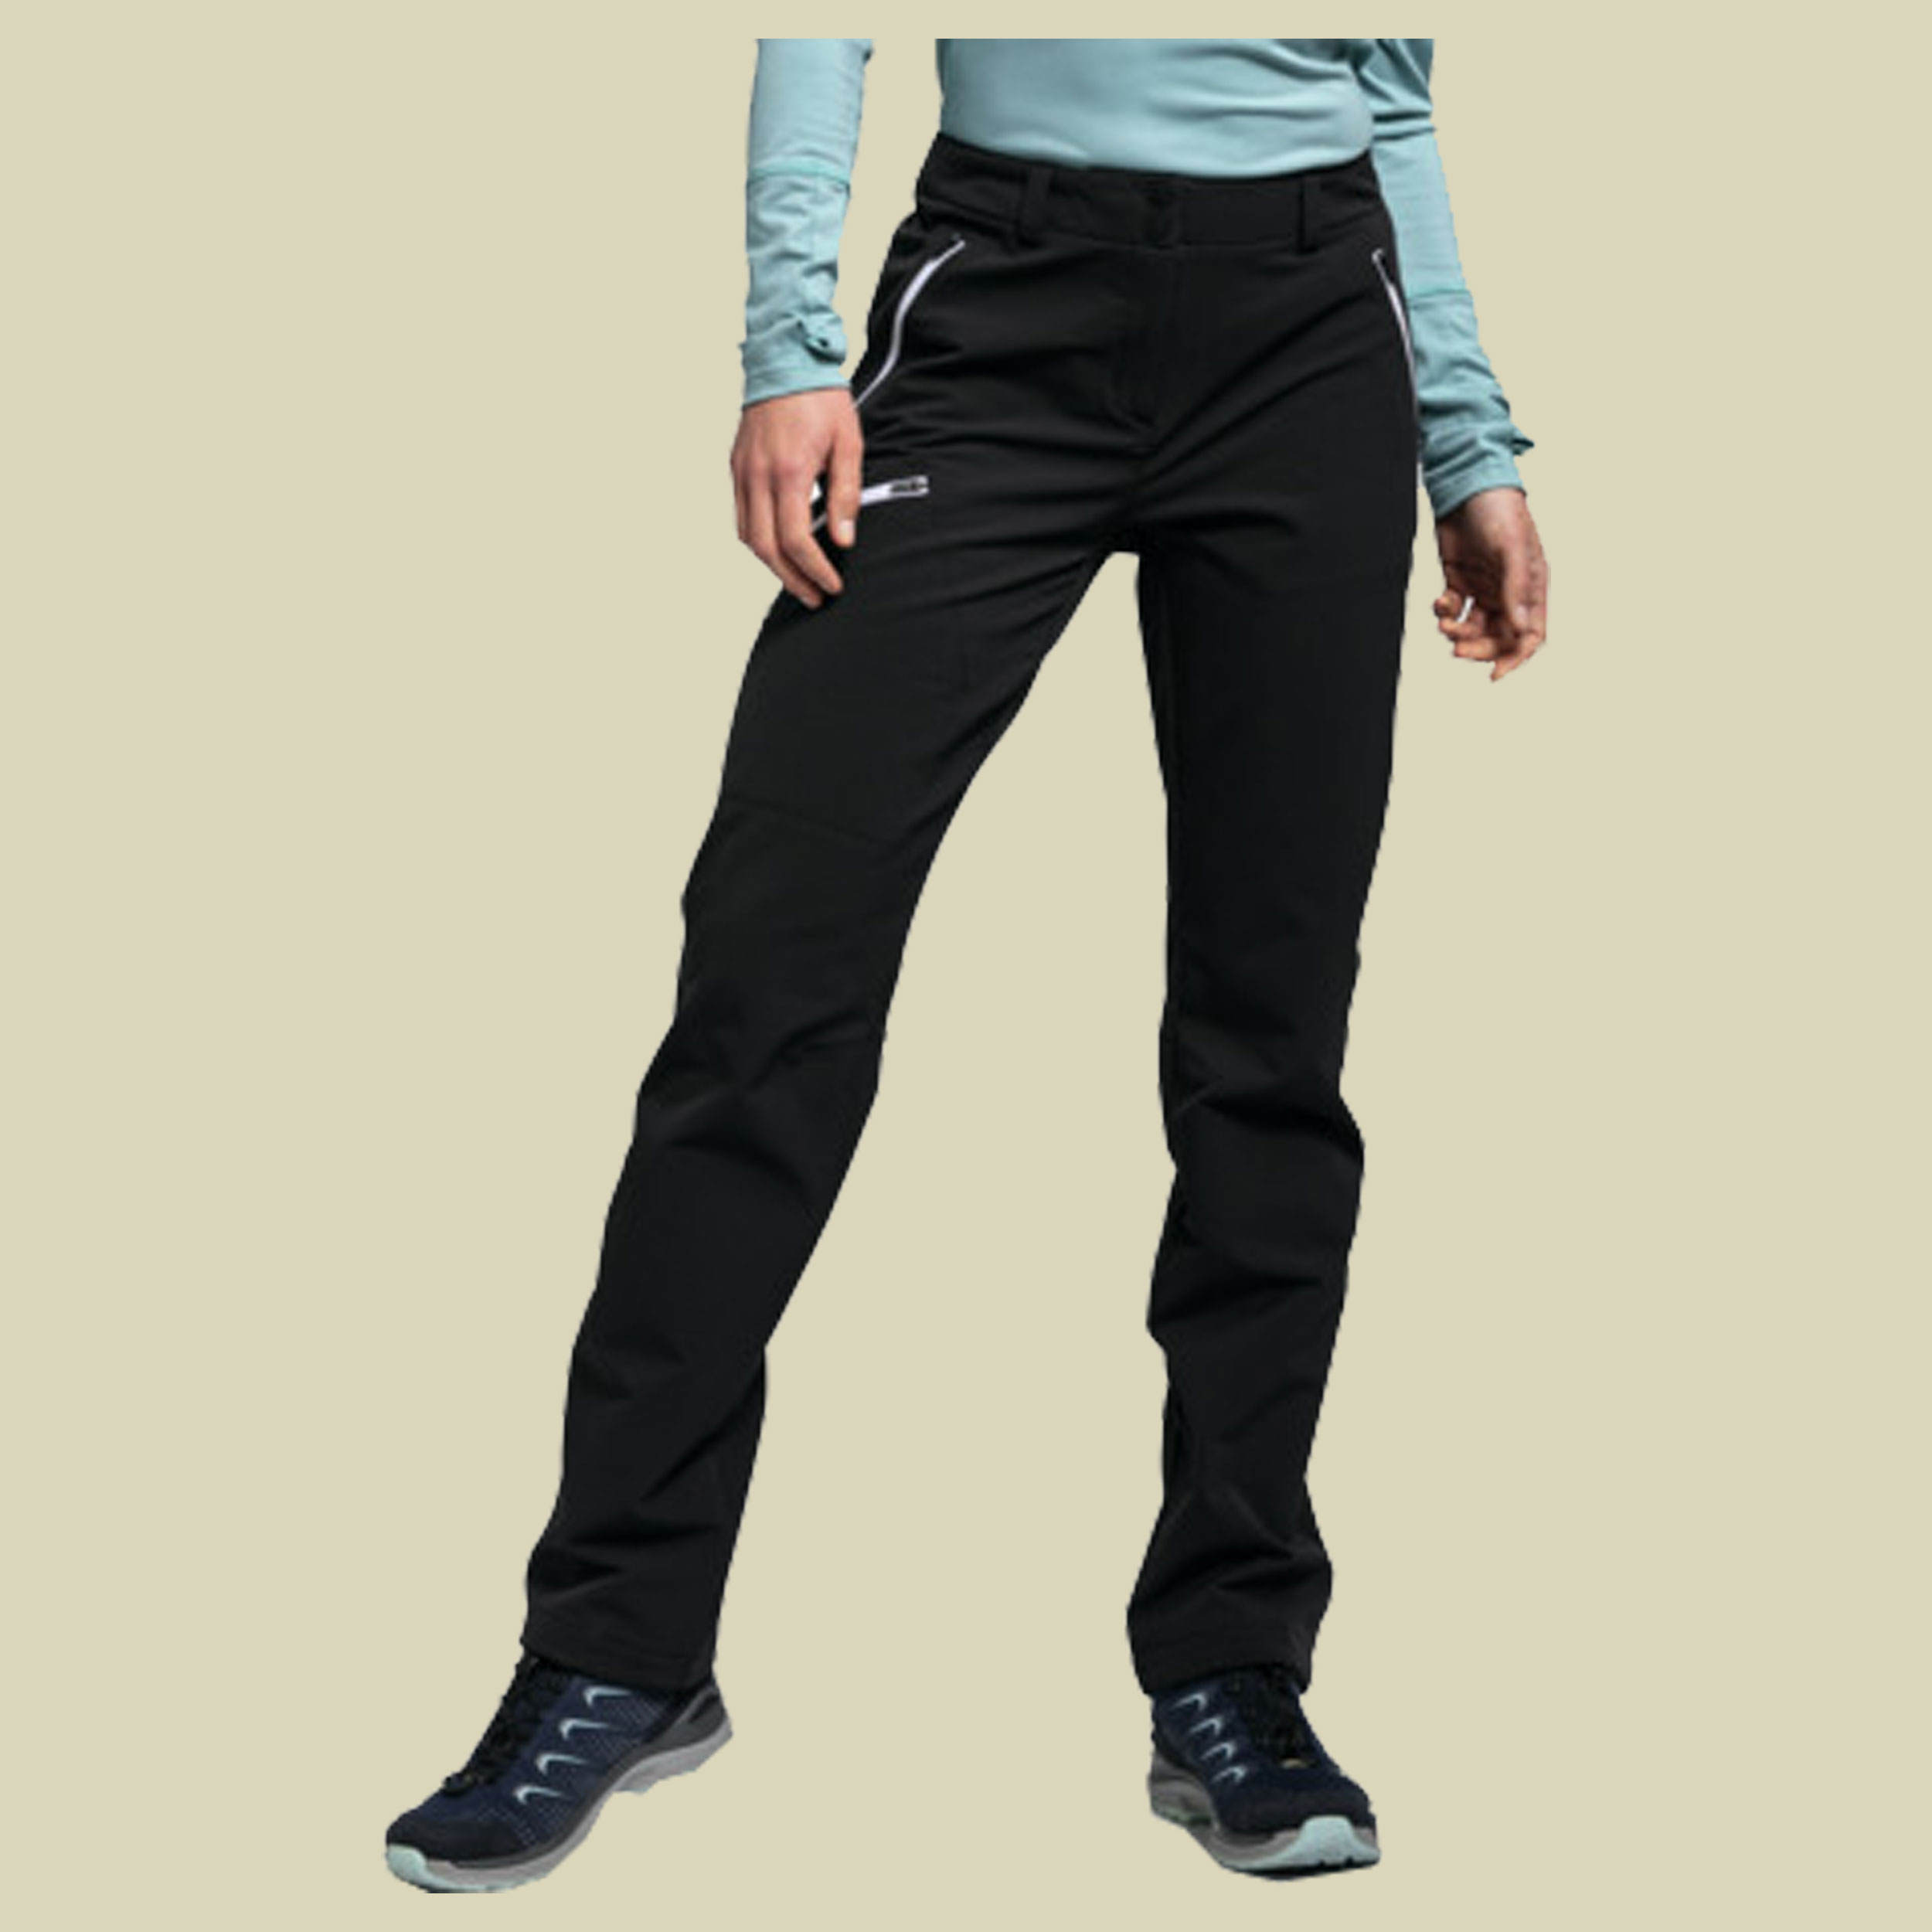 Pants Ascona Warm L Women Größe 42 Farbe black